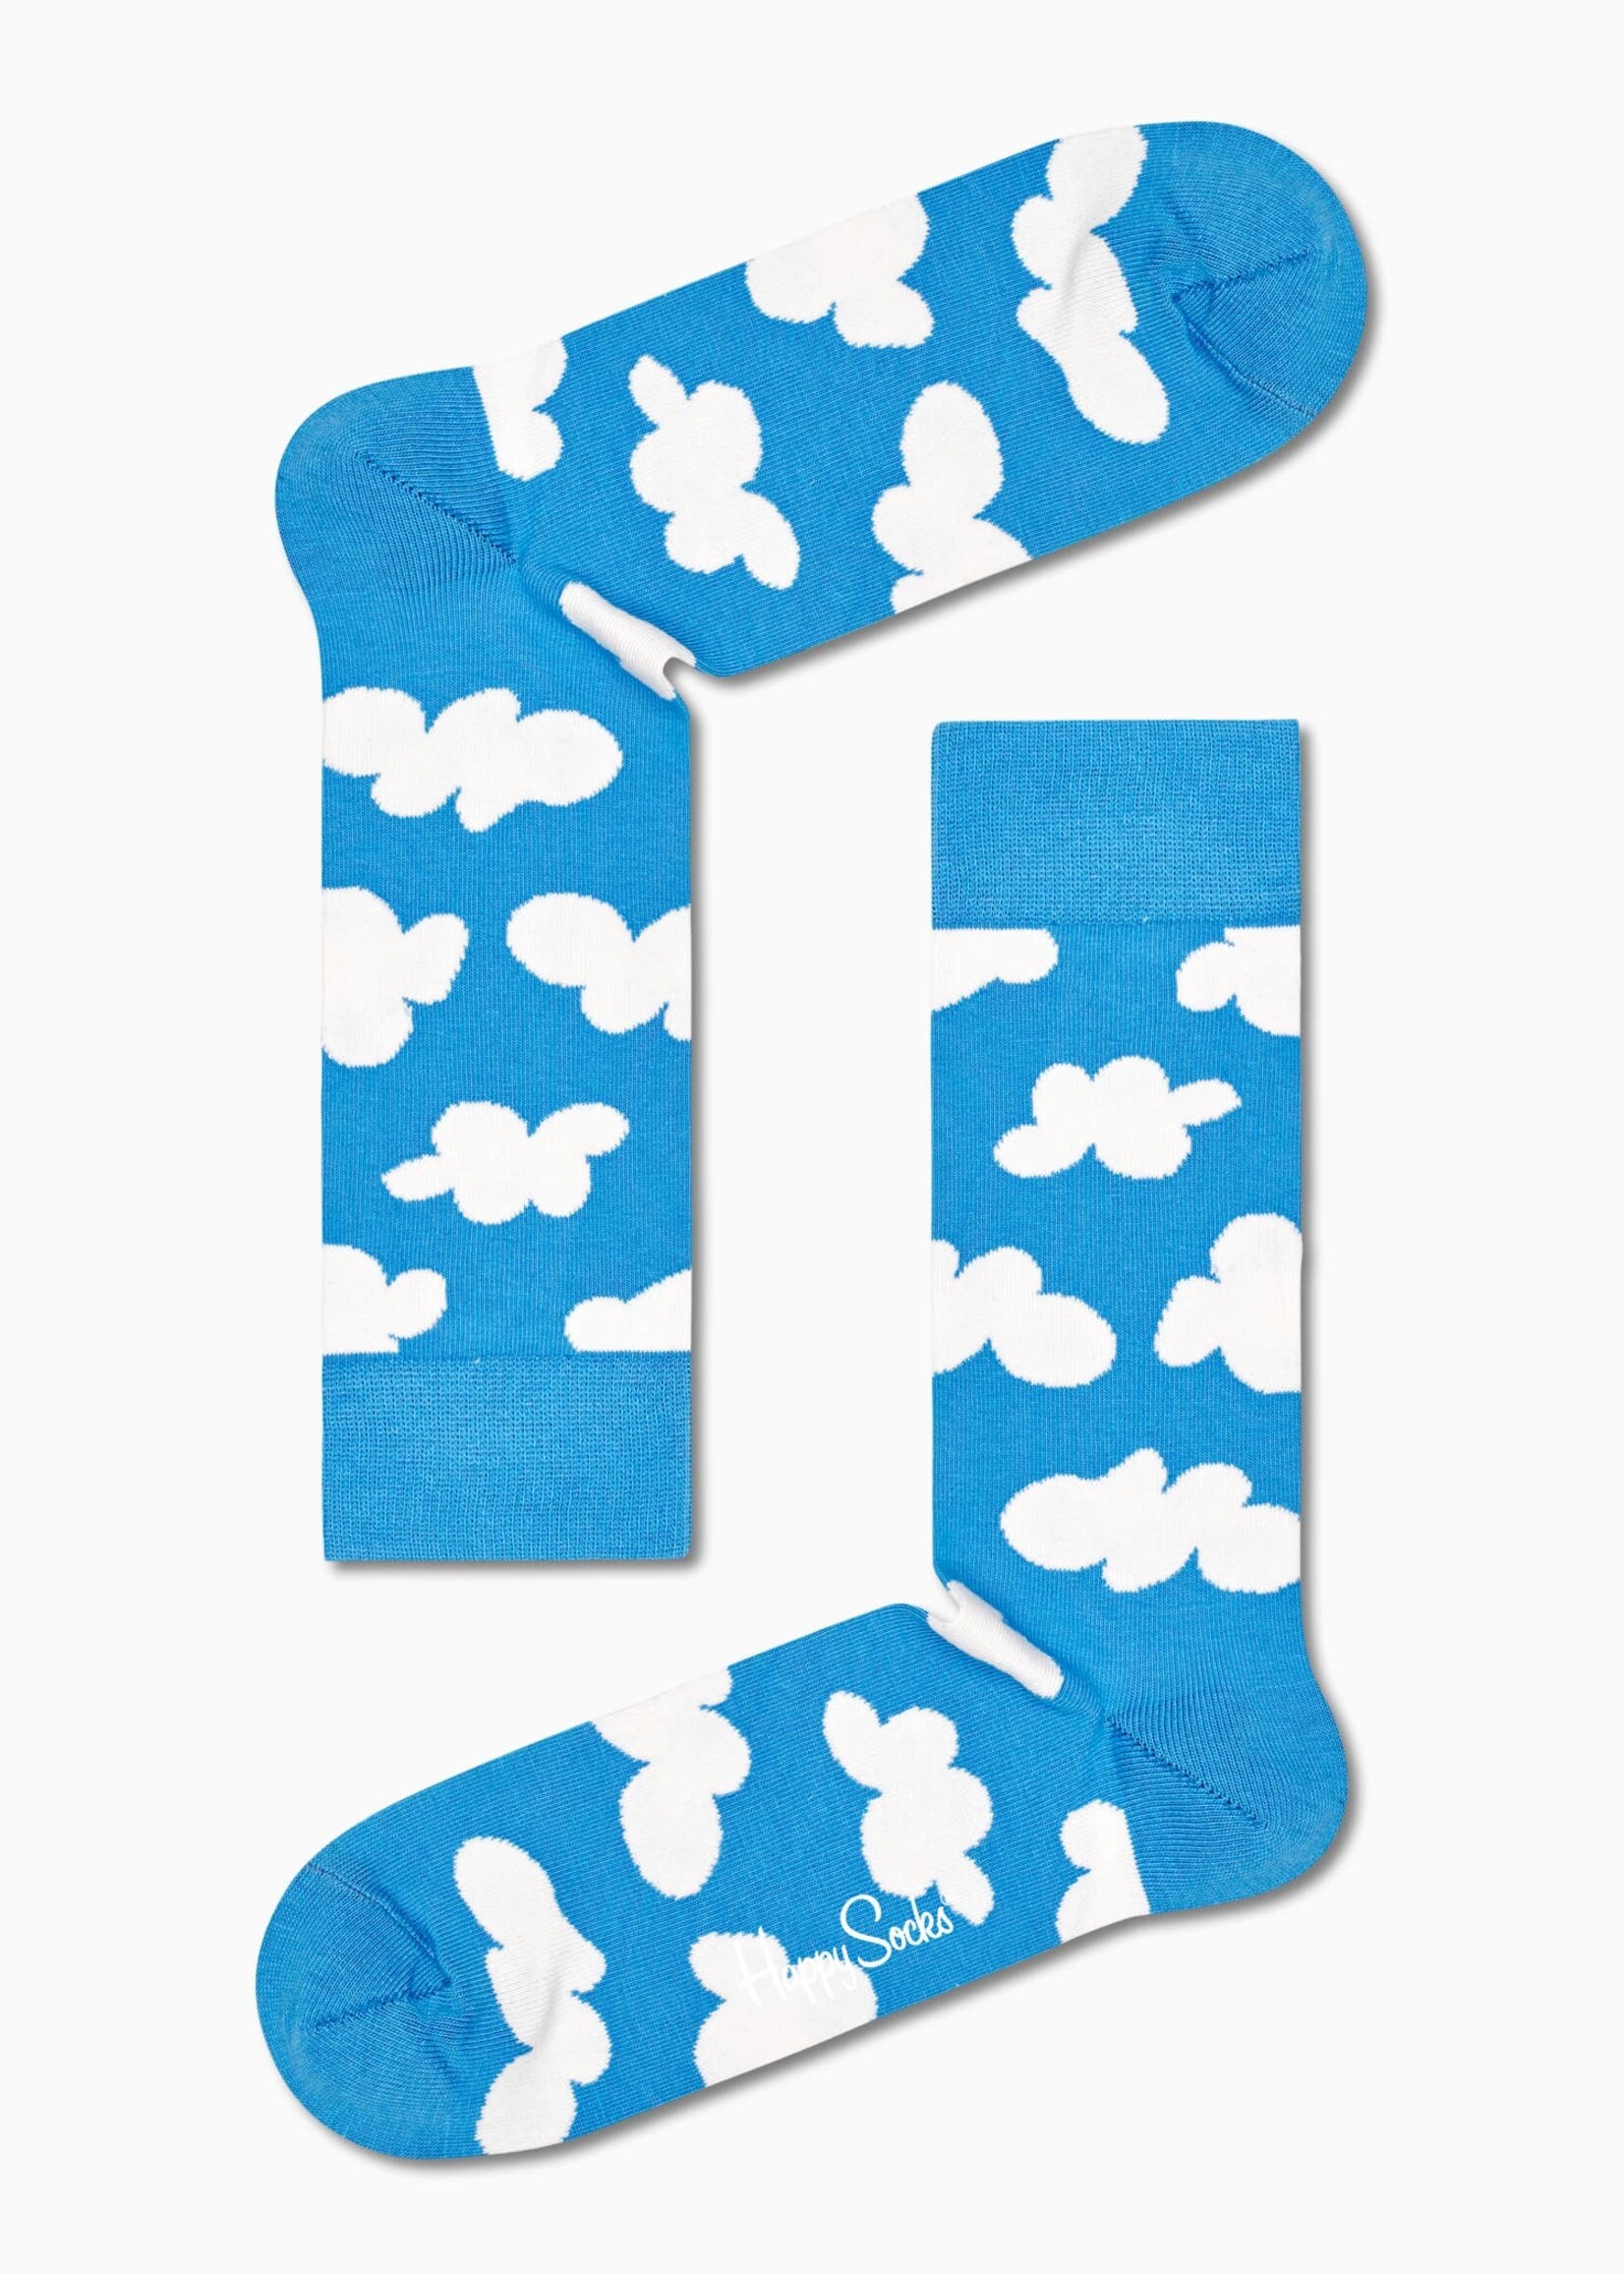 Cloudy Sock Grösse 36-40 (Einheitsgrösse)